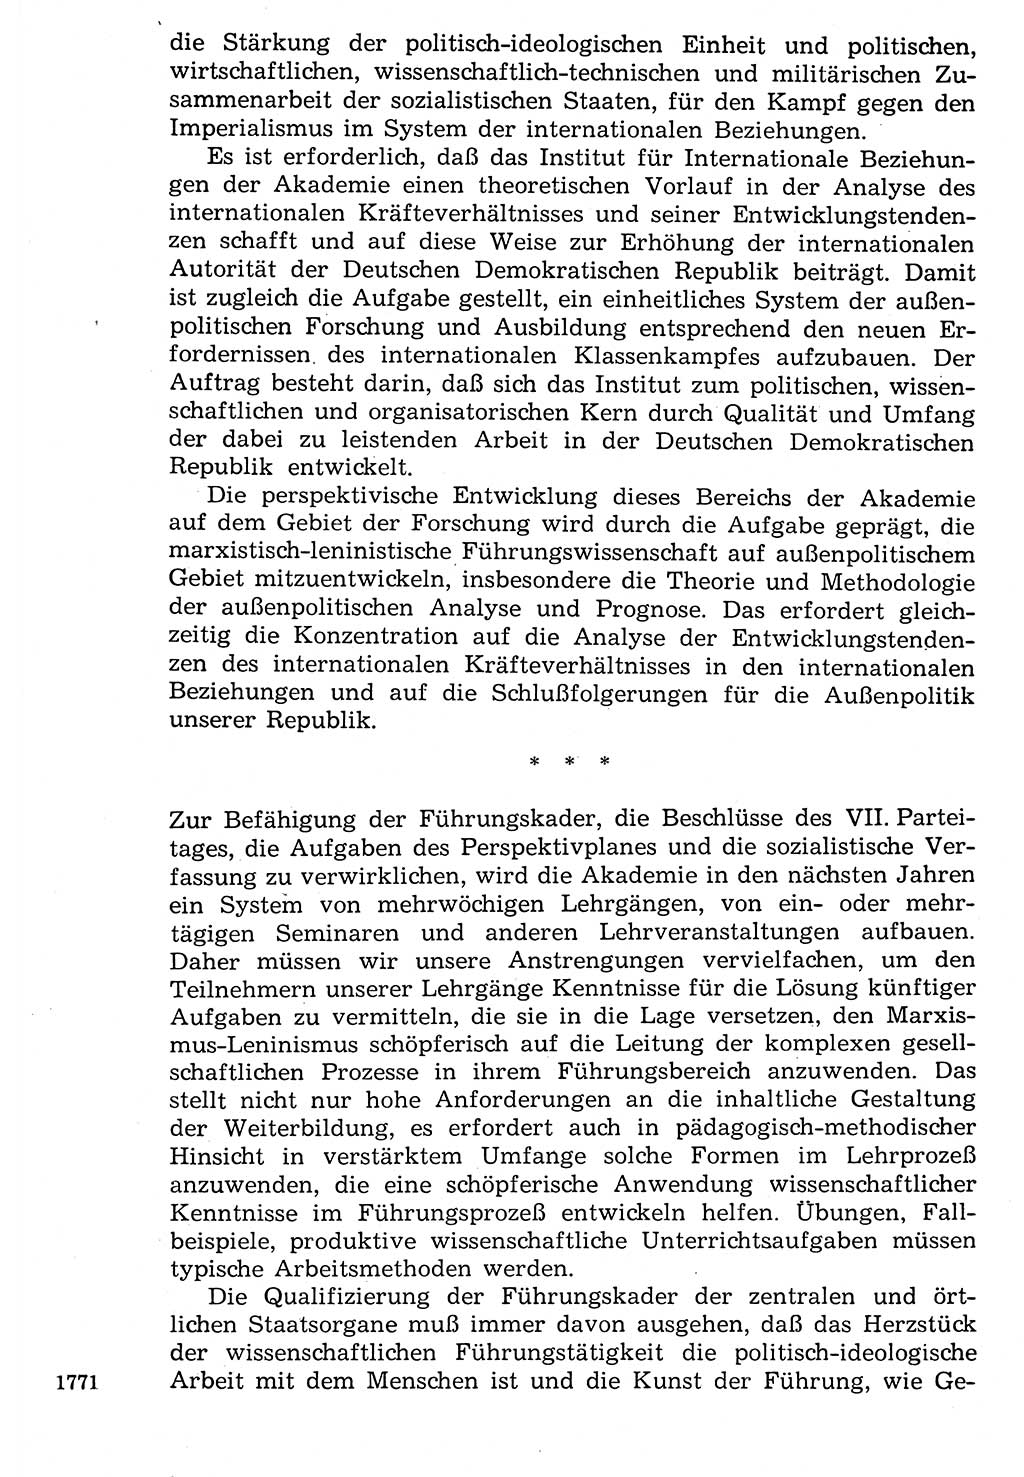 Staat und Recht (StuR), 17. Jahrgang [Deutsche Demokratische Republik (DDR)] 1968, Seite 1771 (StuR DDR 1968, S. 1771)